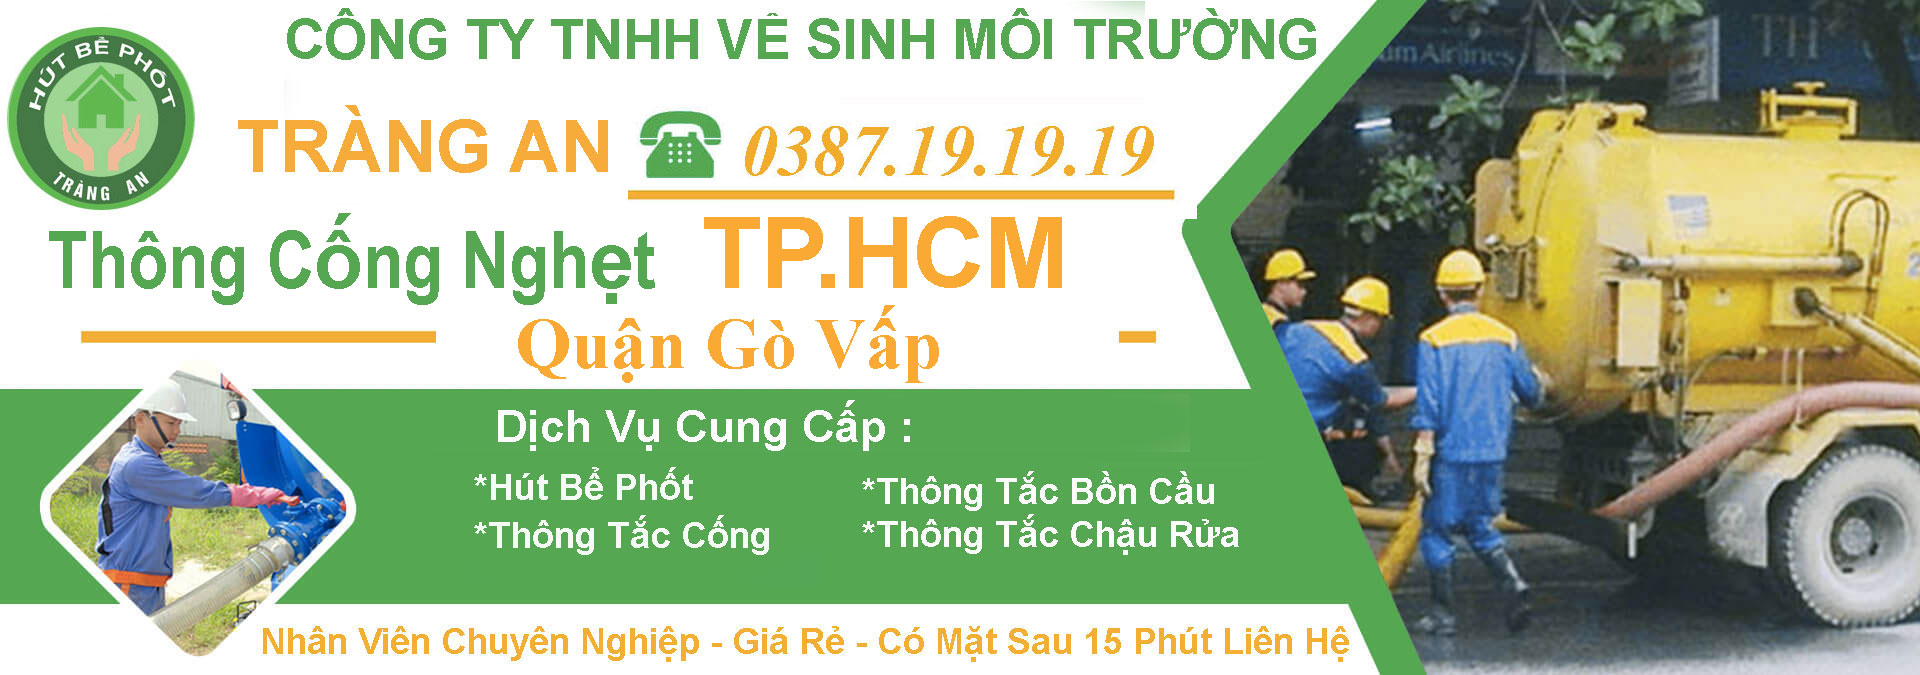 Thong Cong Nghet Tphcm Quan Go Vap